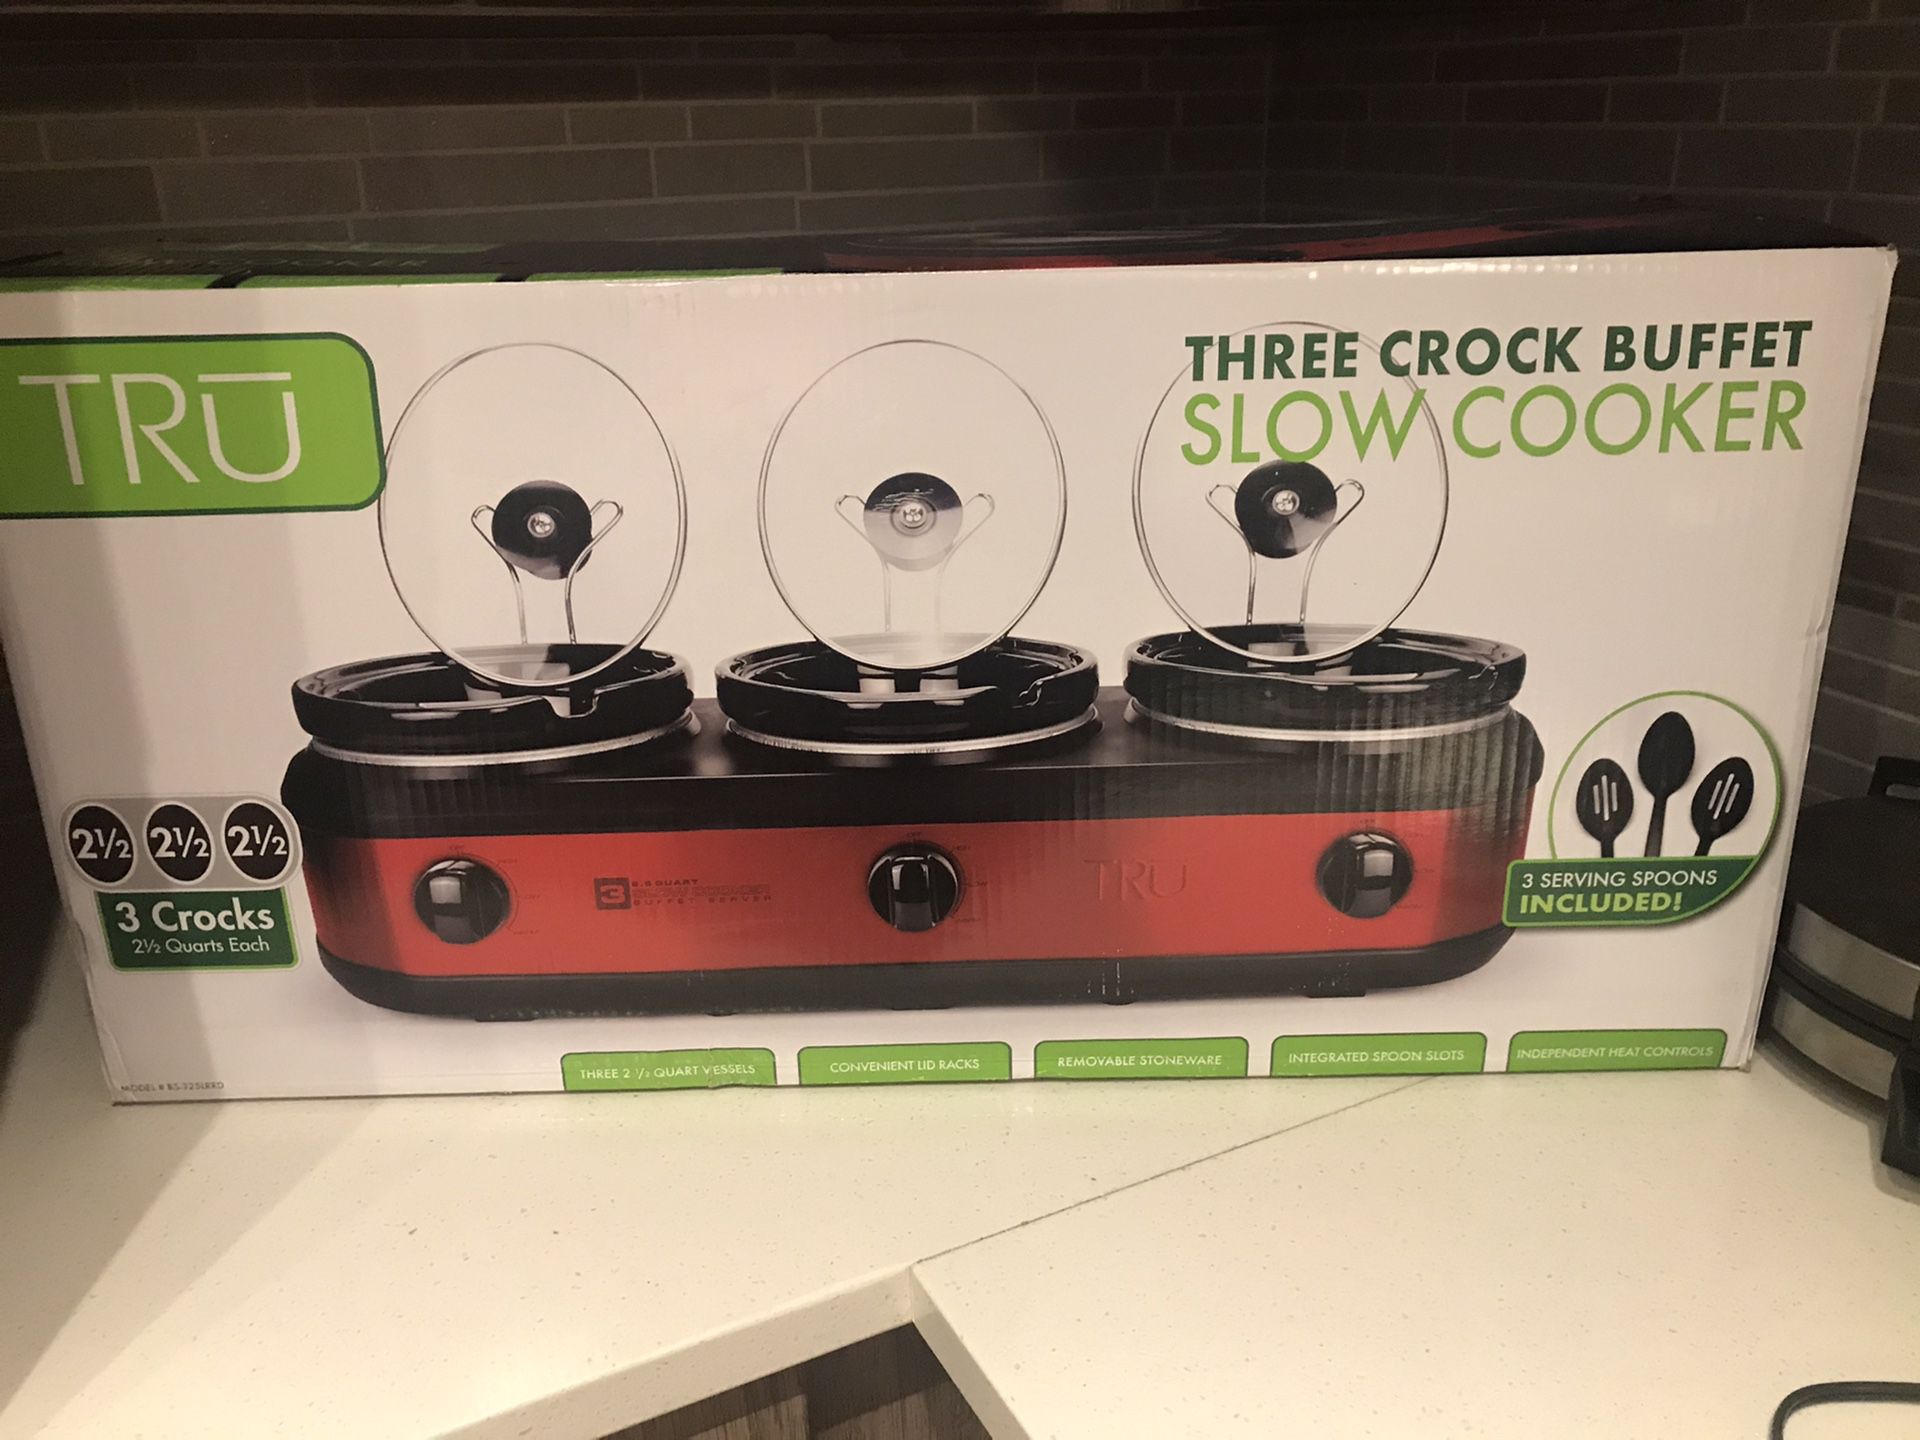 BRAND NEW Tru trio crock pot/slow cooker